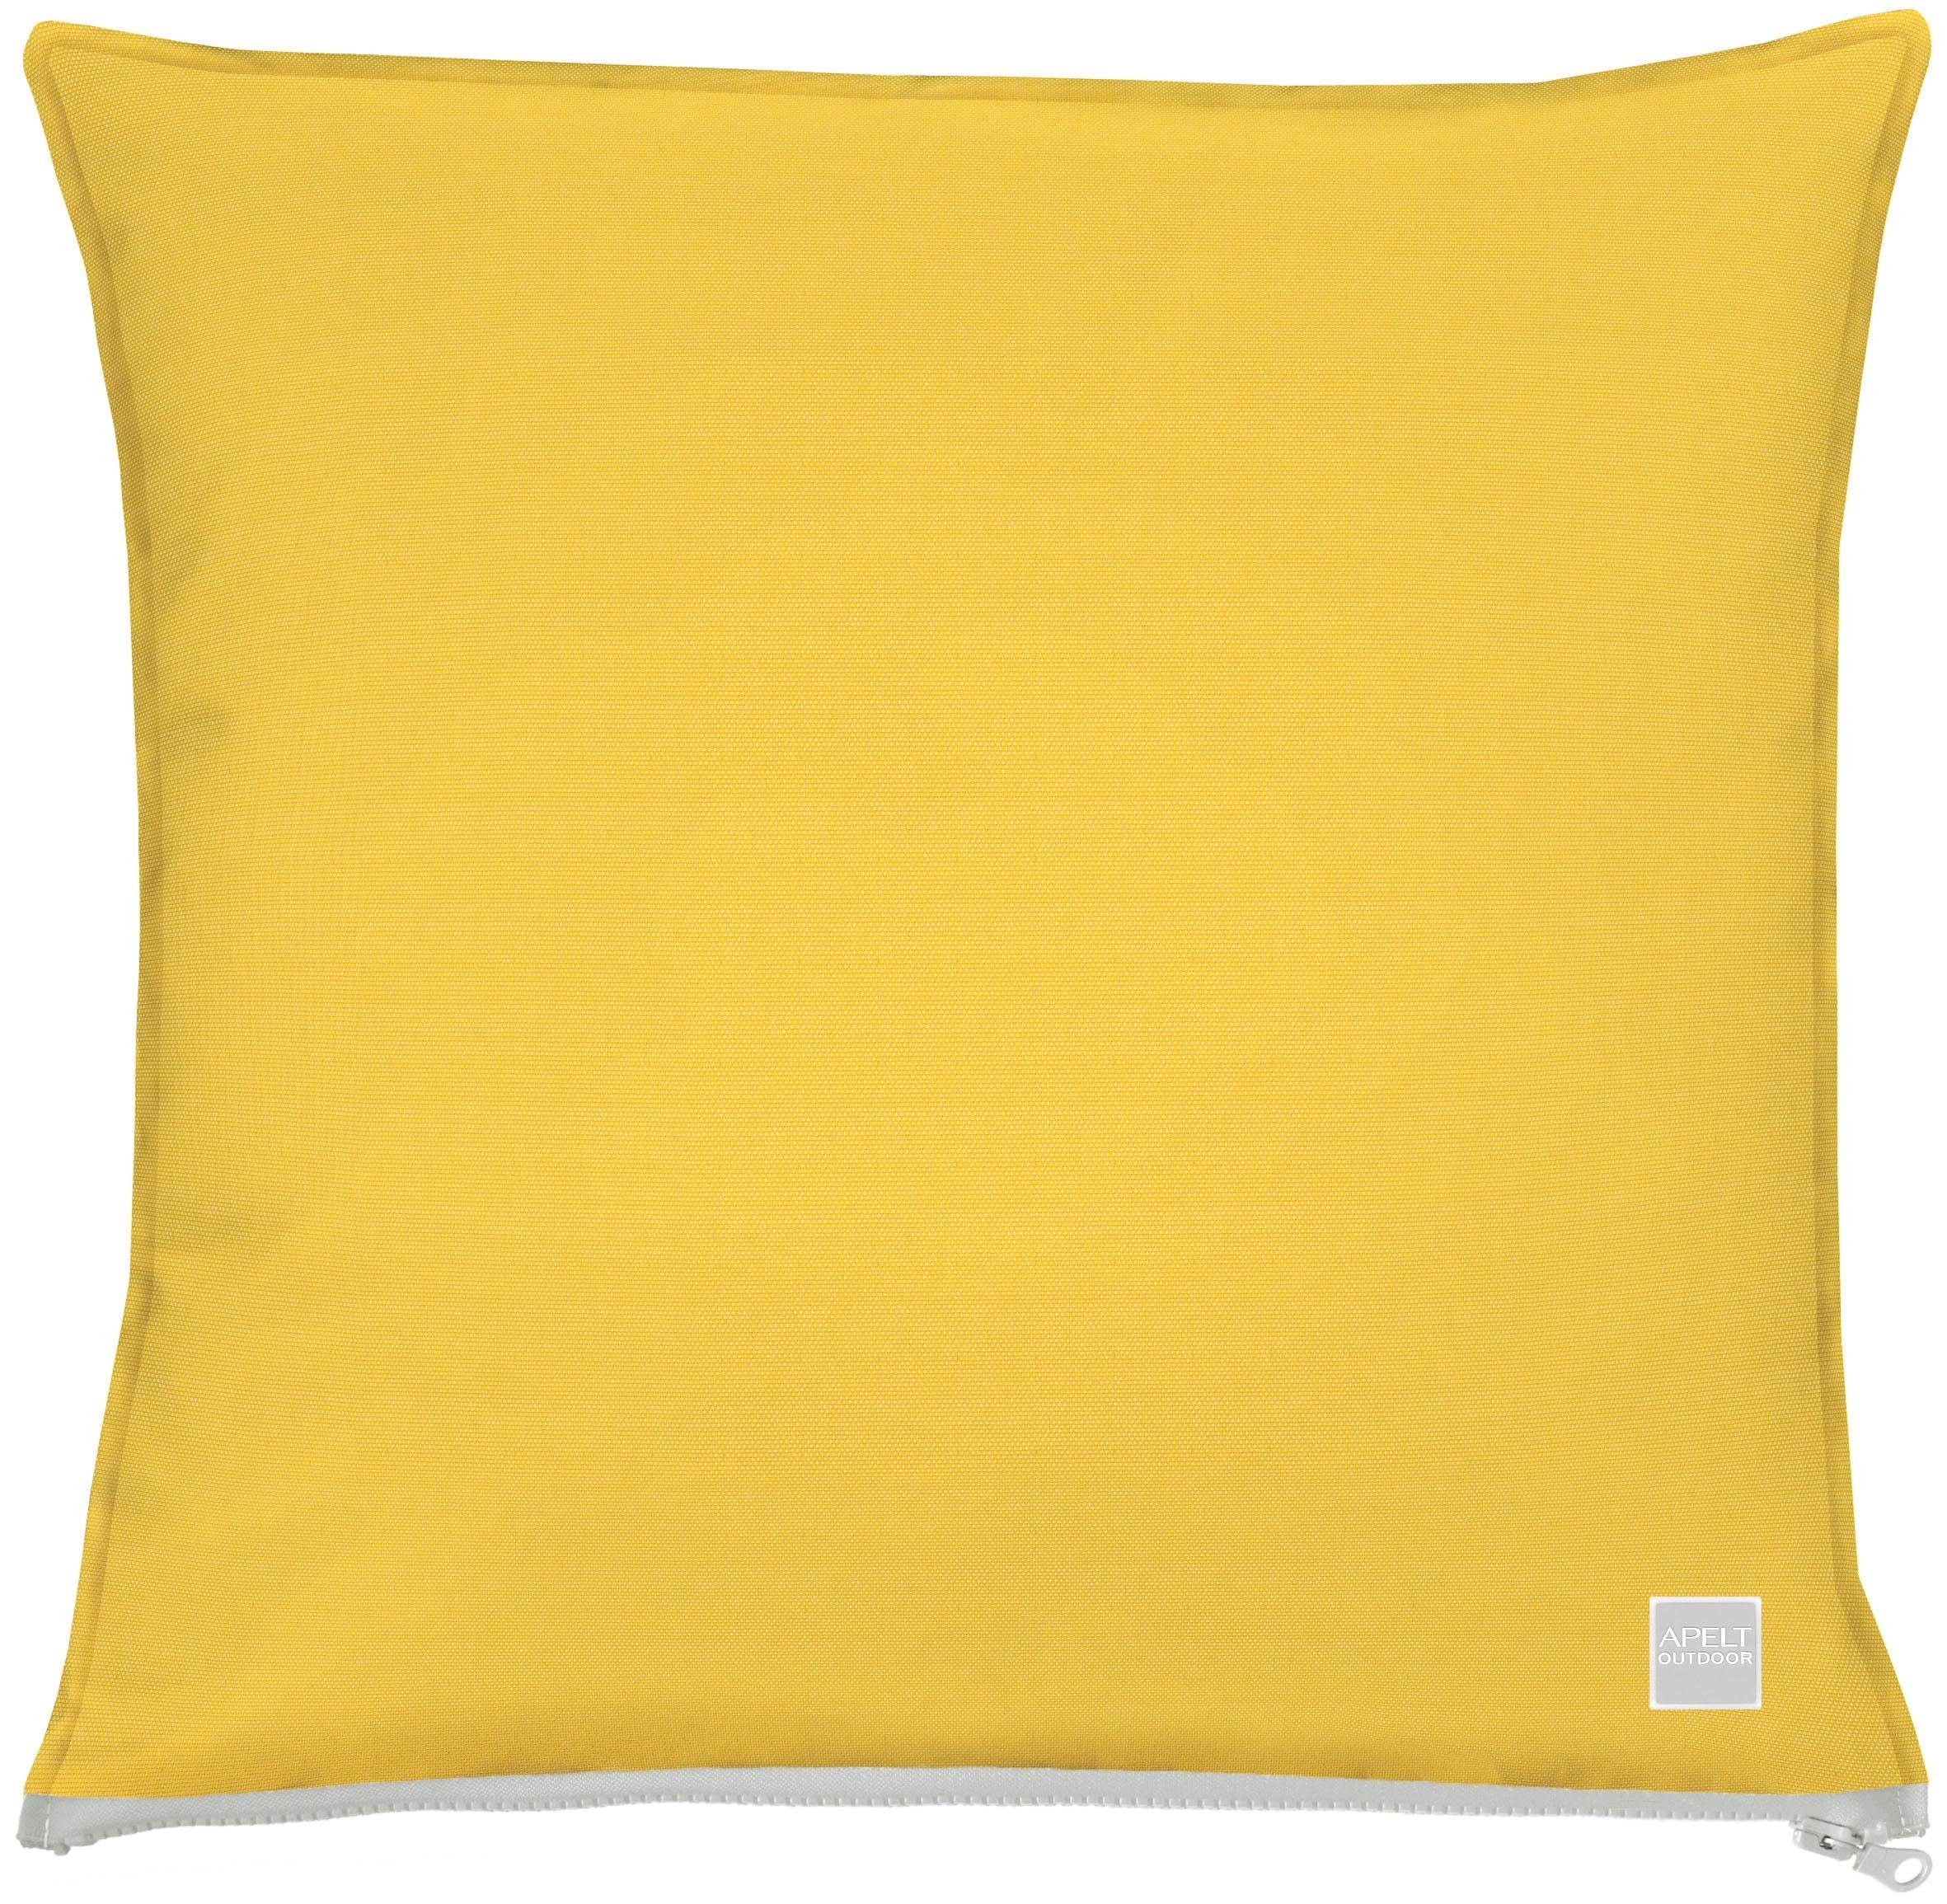 Kissenhülle 3959, APELT (1 Stück), Kissenhülle ohne Füllung, 1 Stück gelb | Kissenbezüge